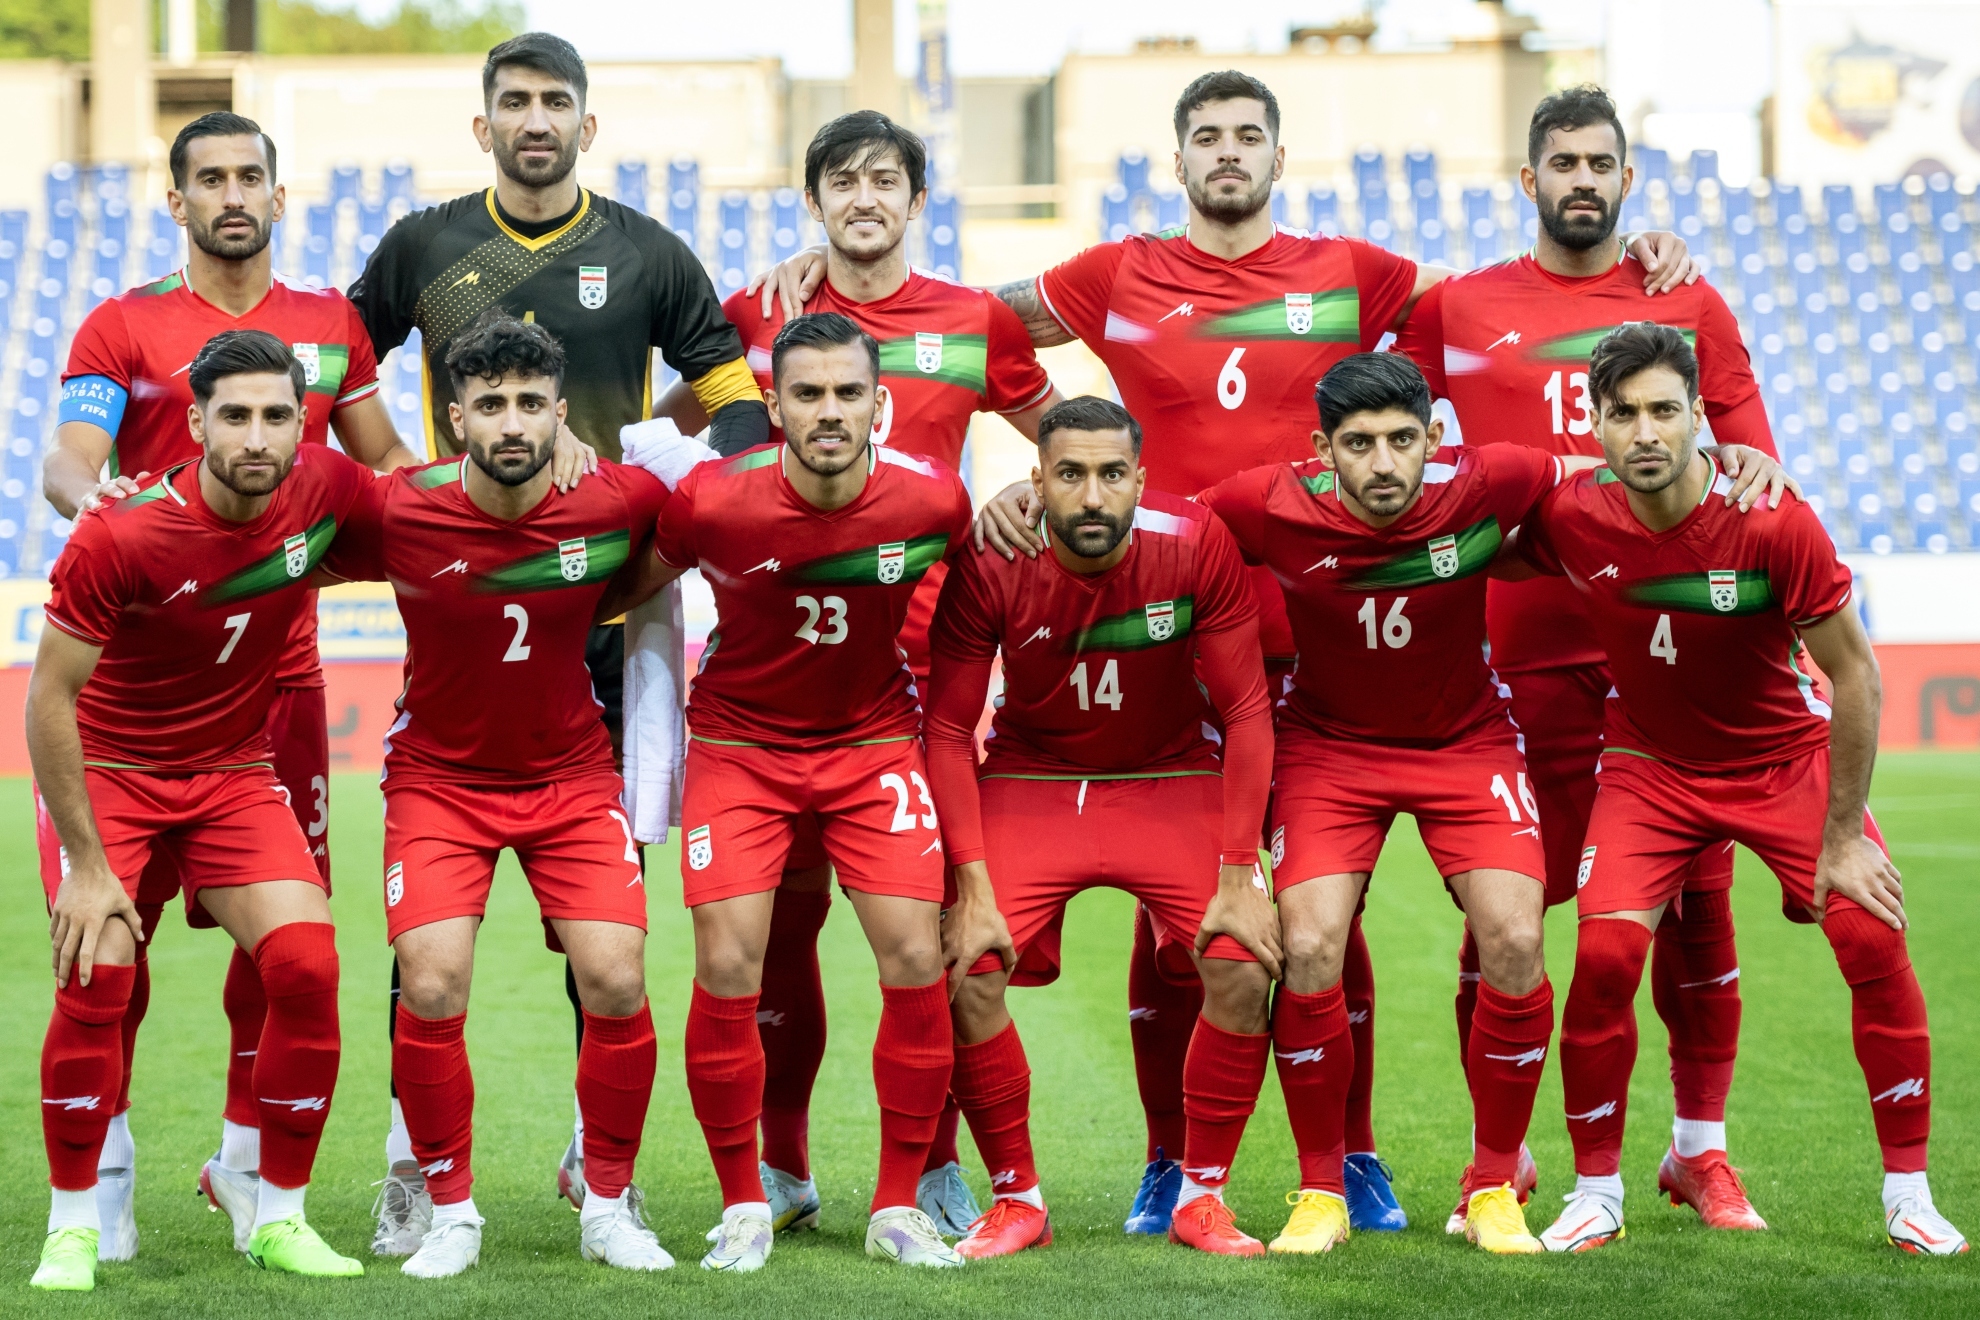 ĐT Iran quyết tâm lội ngược dòng sau cơn ác mộng khi gặp tuyển Anh